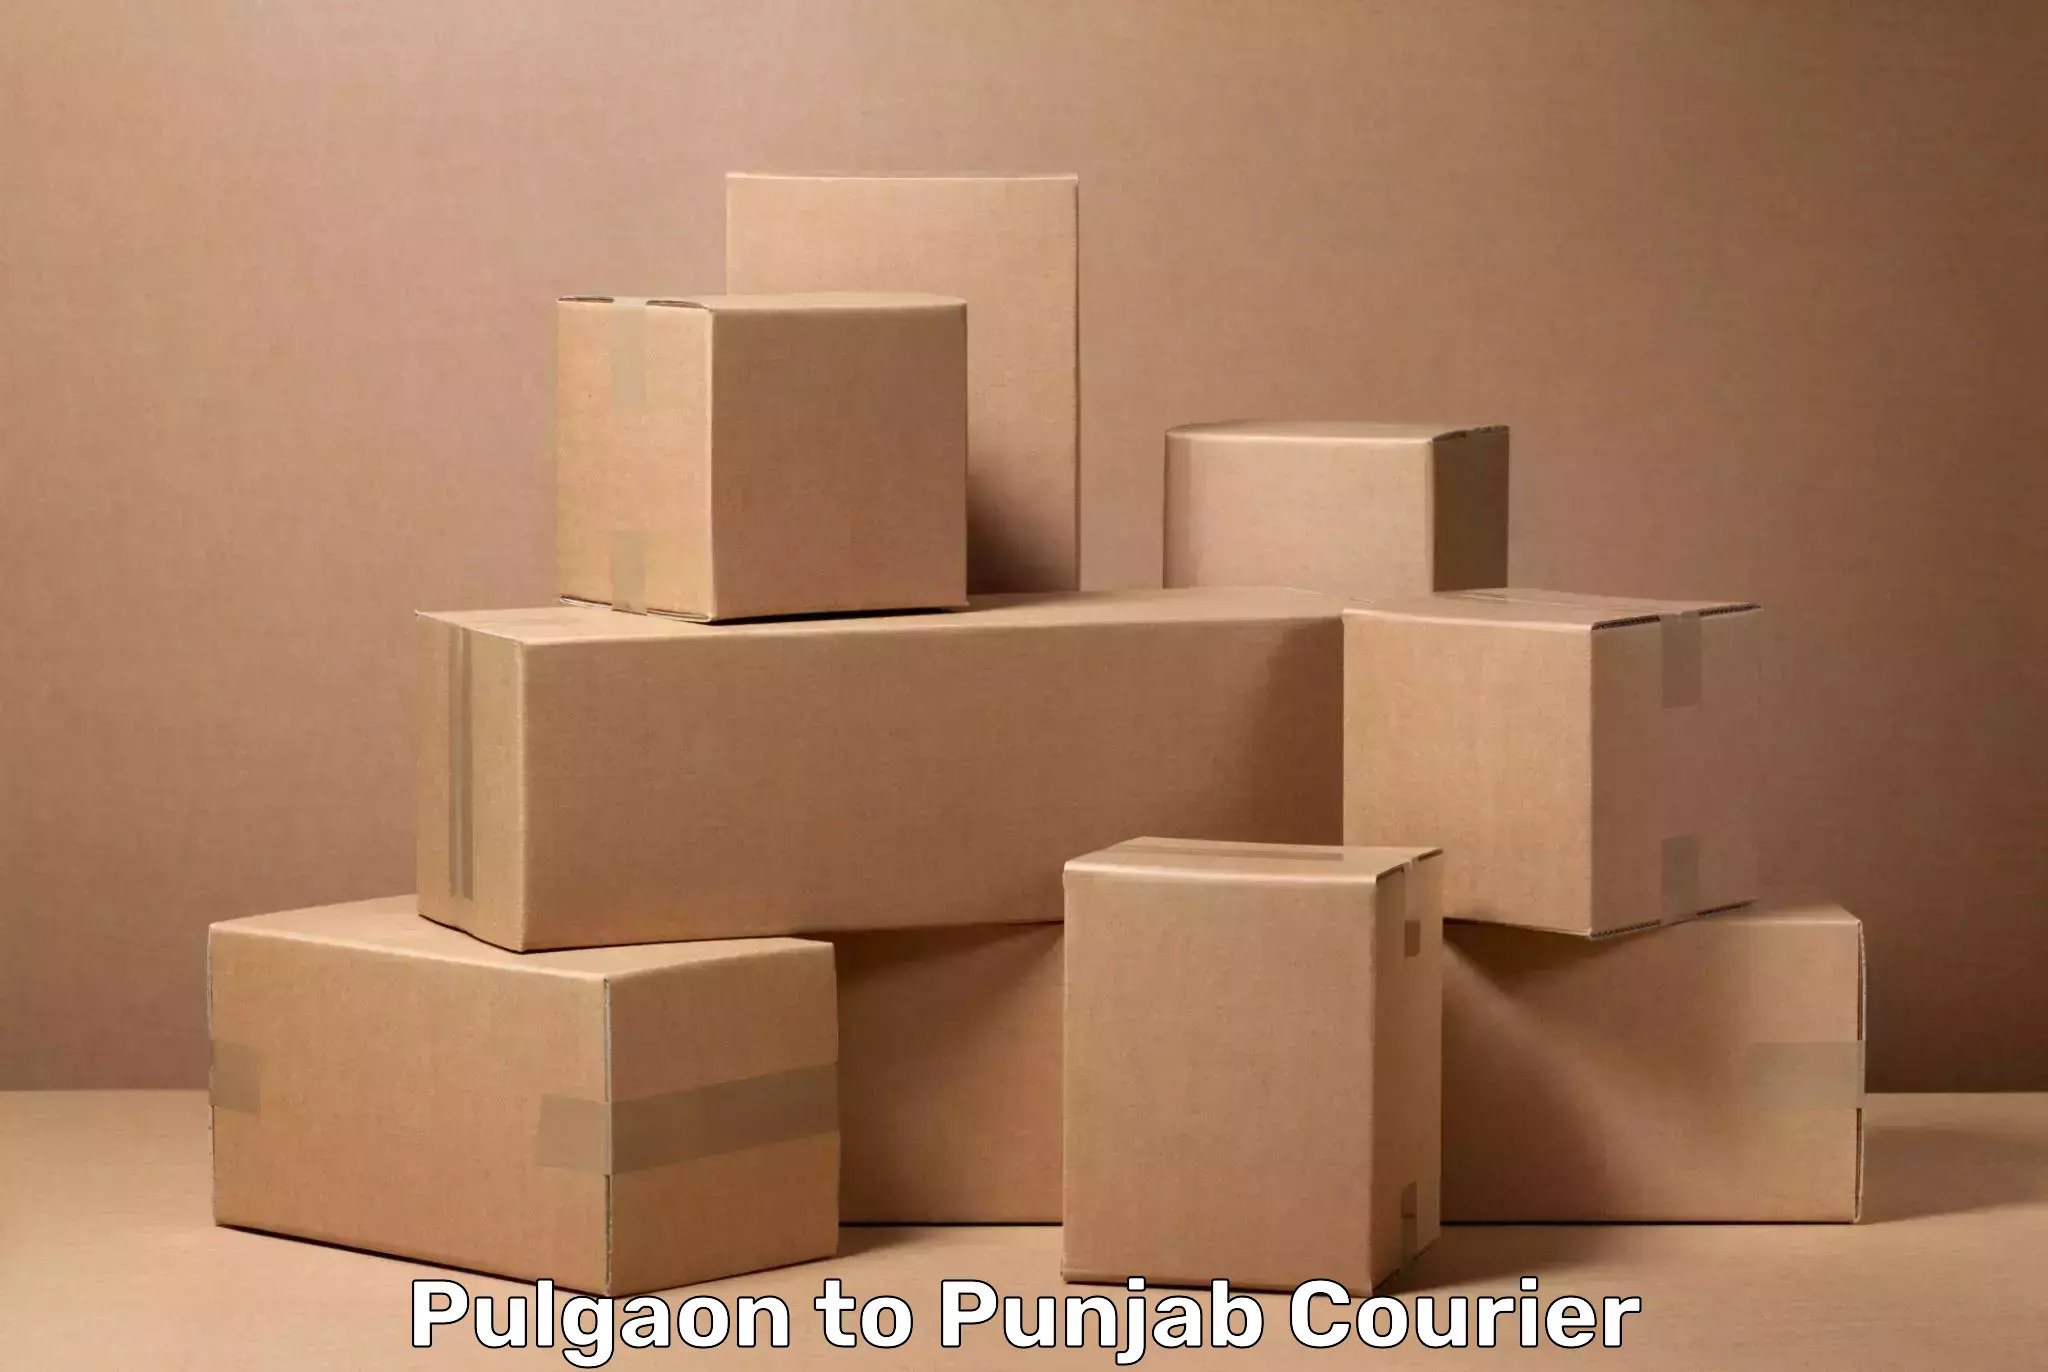 Baggage shipping experts Pulgaon to Rupnagar